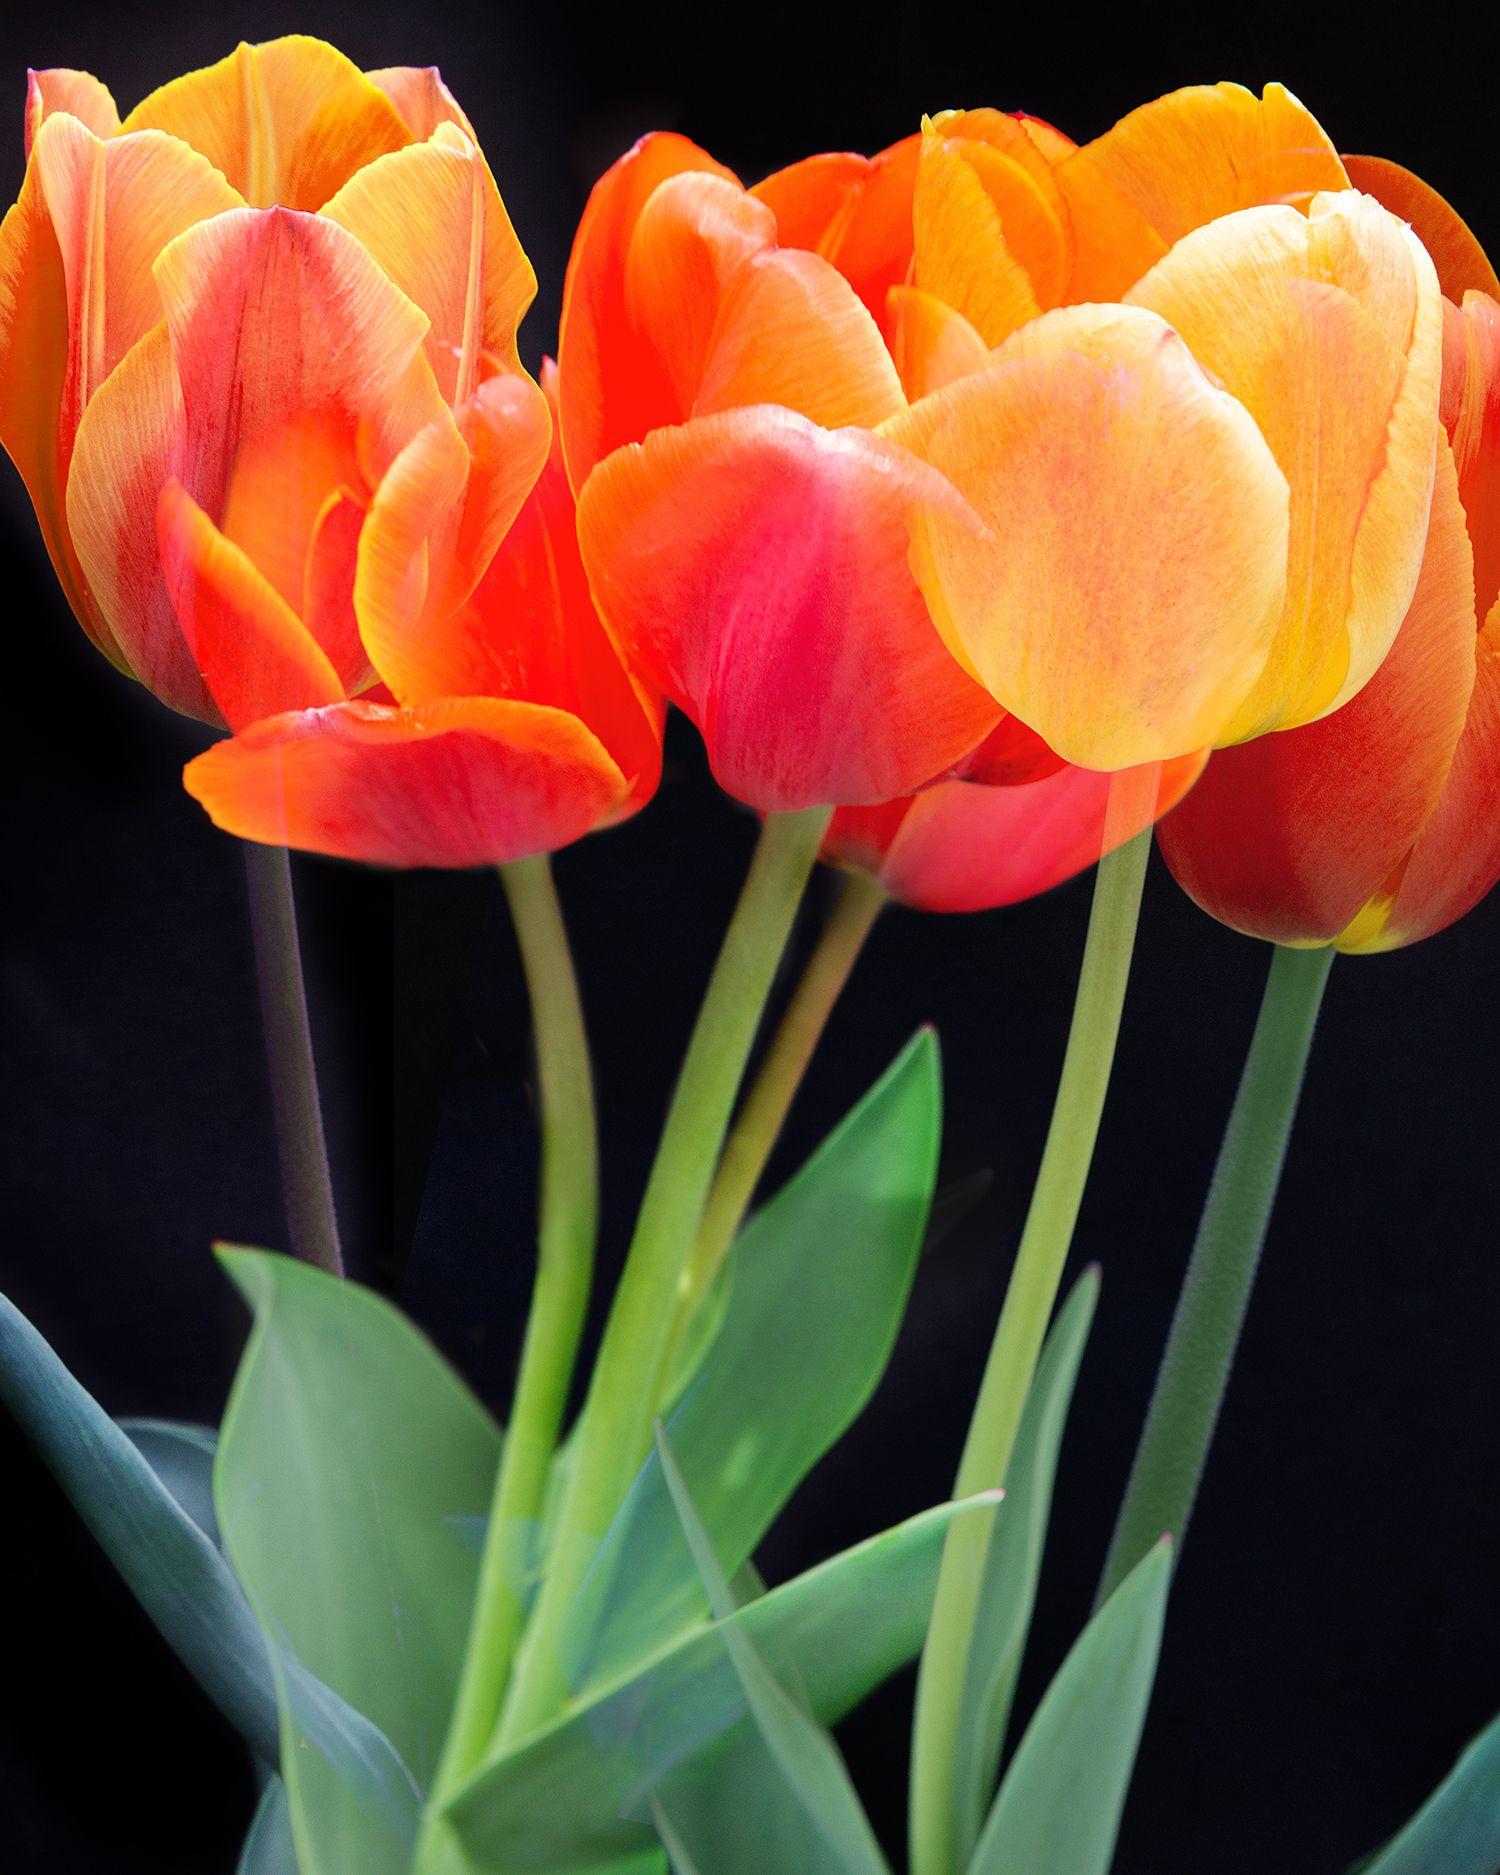 Michael Filonow Color Photograph - Tulips, Photograph, Archival Ink Jet